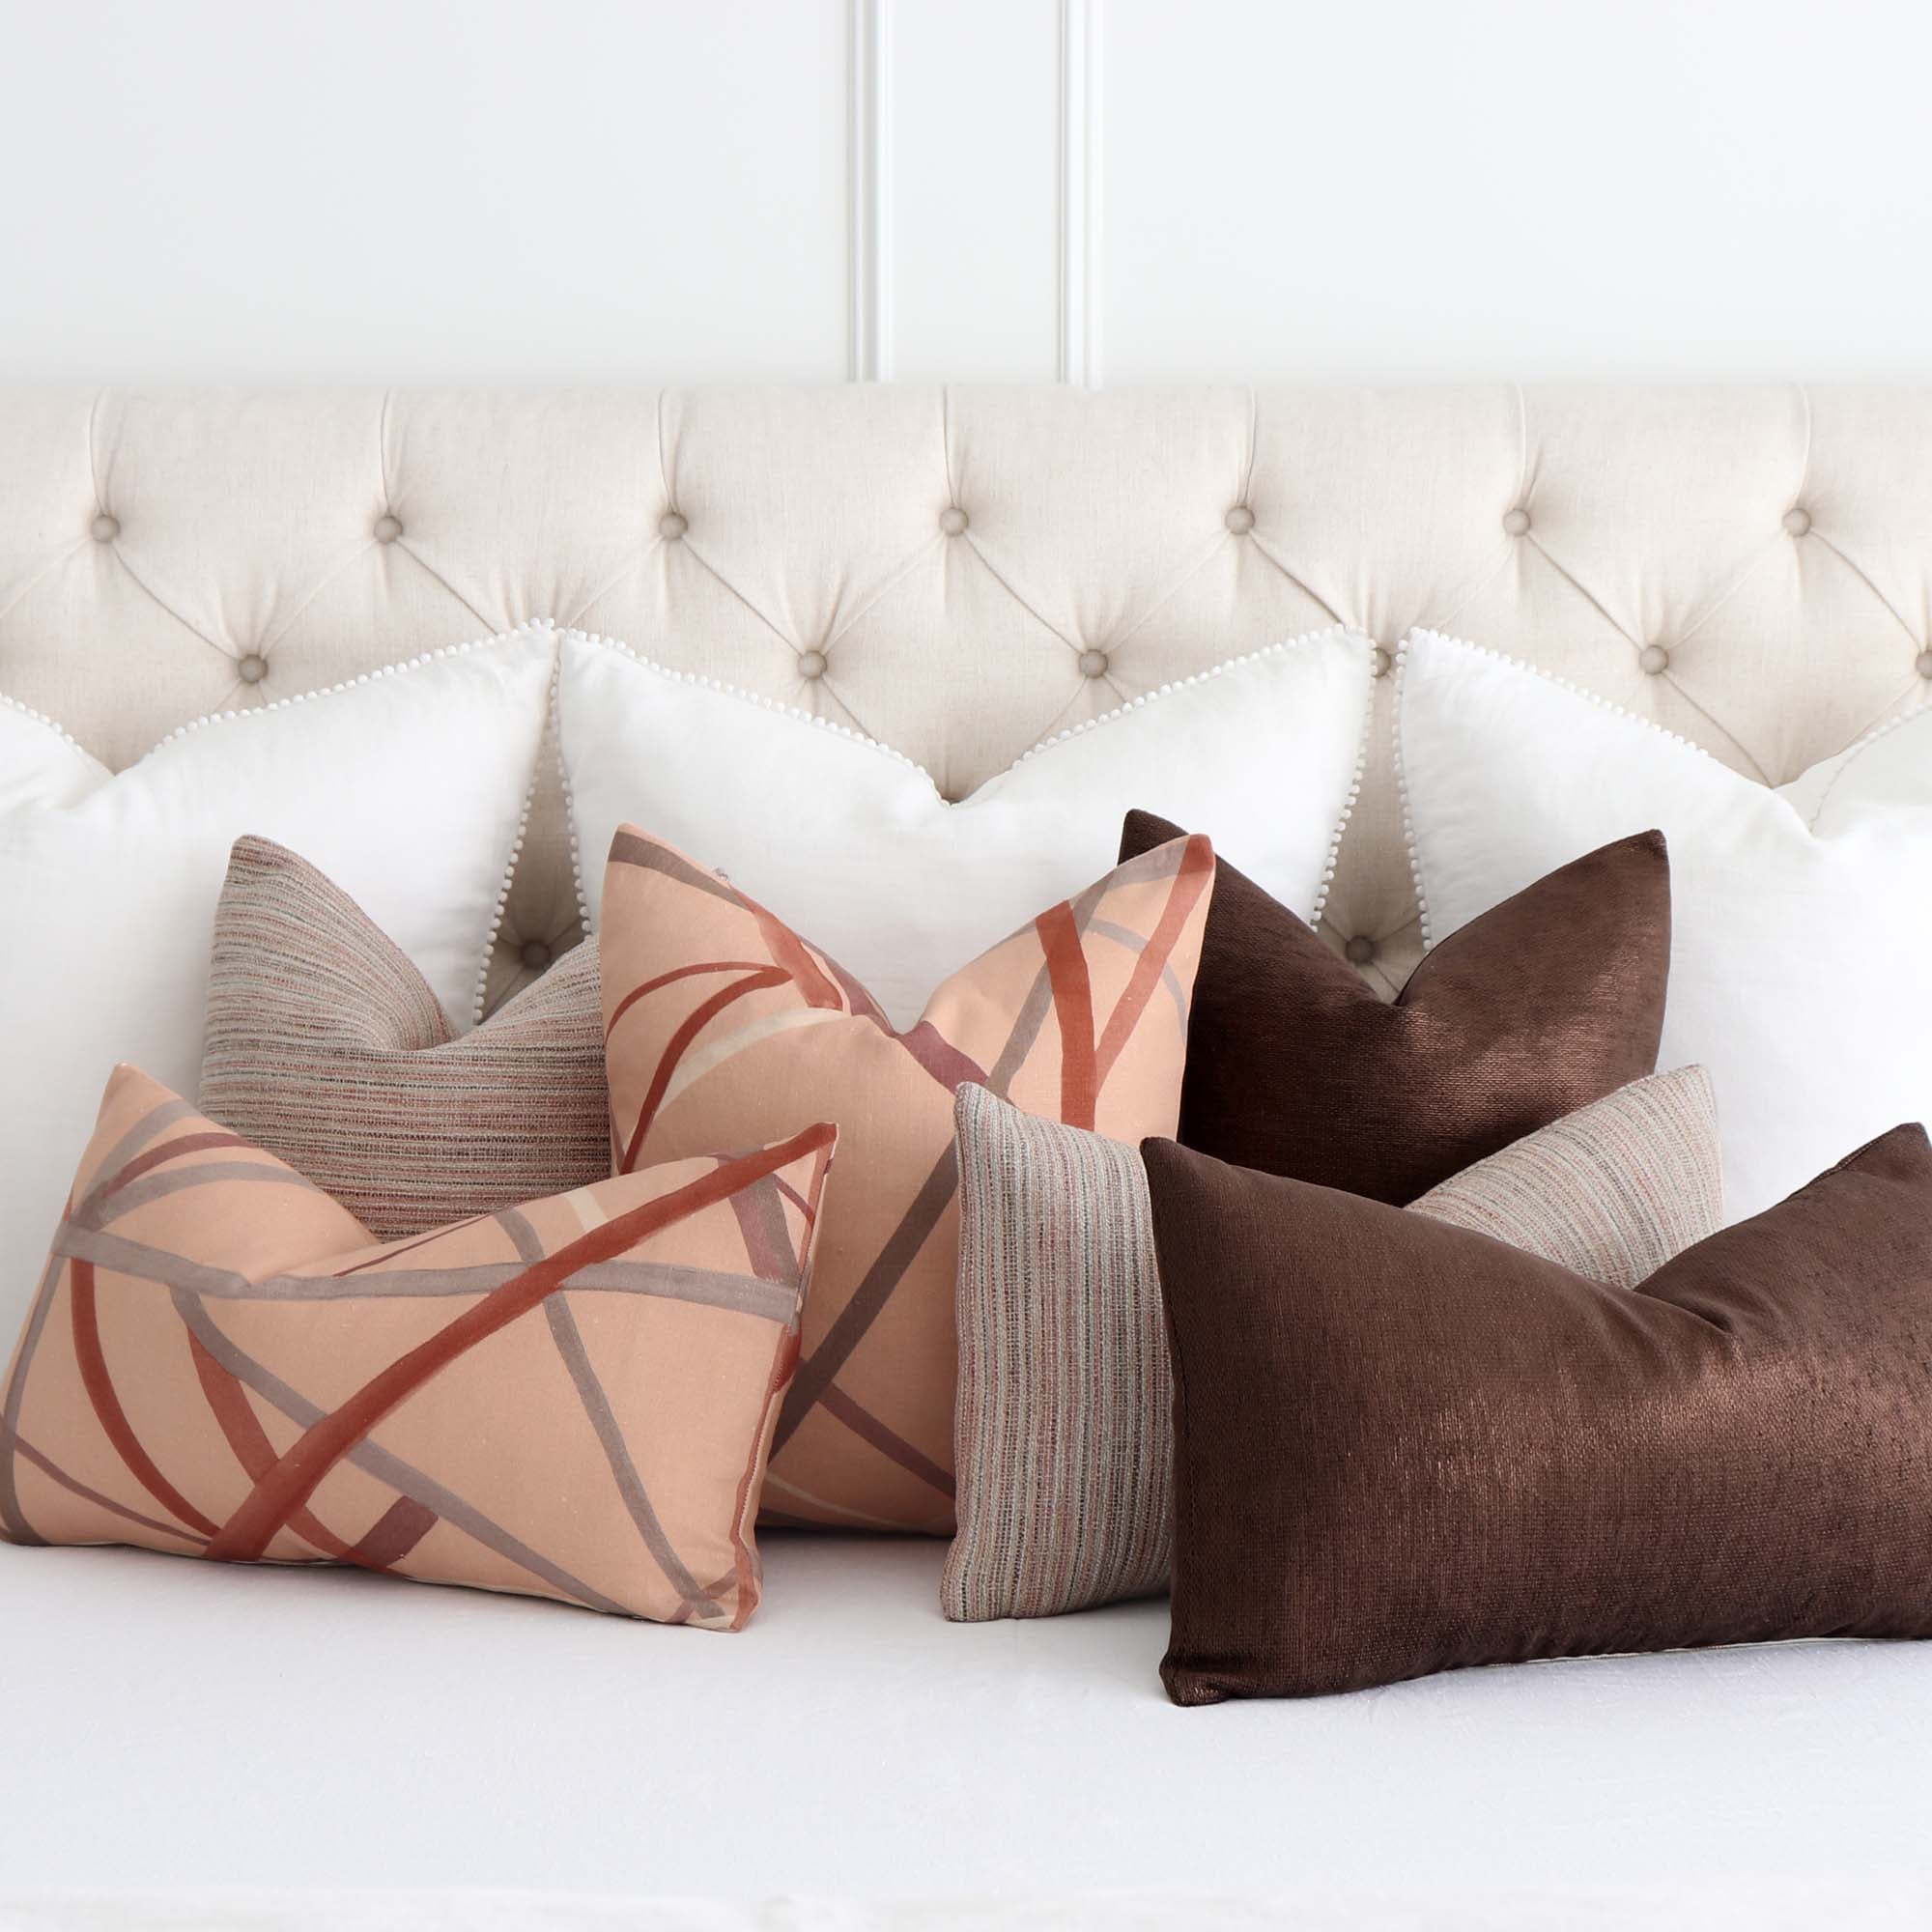 Glimmer Bronze Designer Throw Pillow in Metallic Shimmer - Chloe & Olive